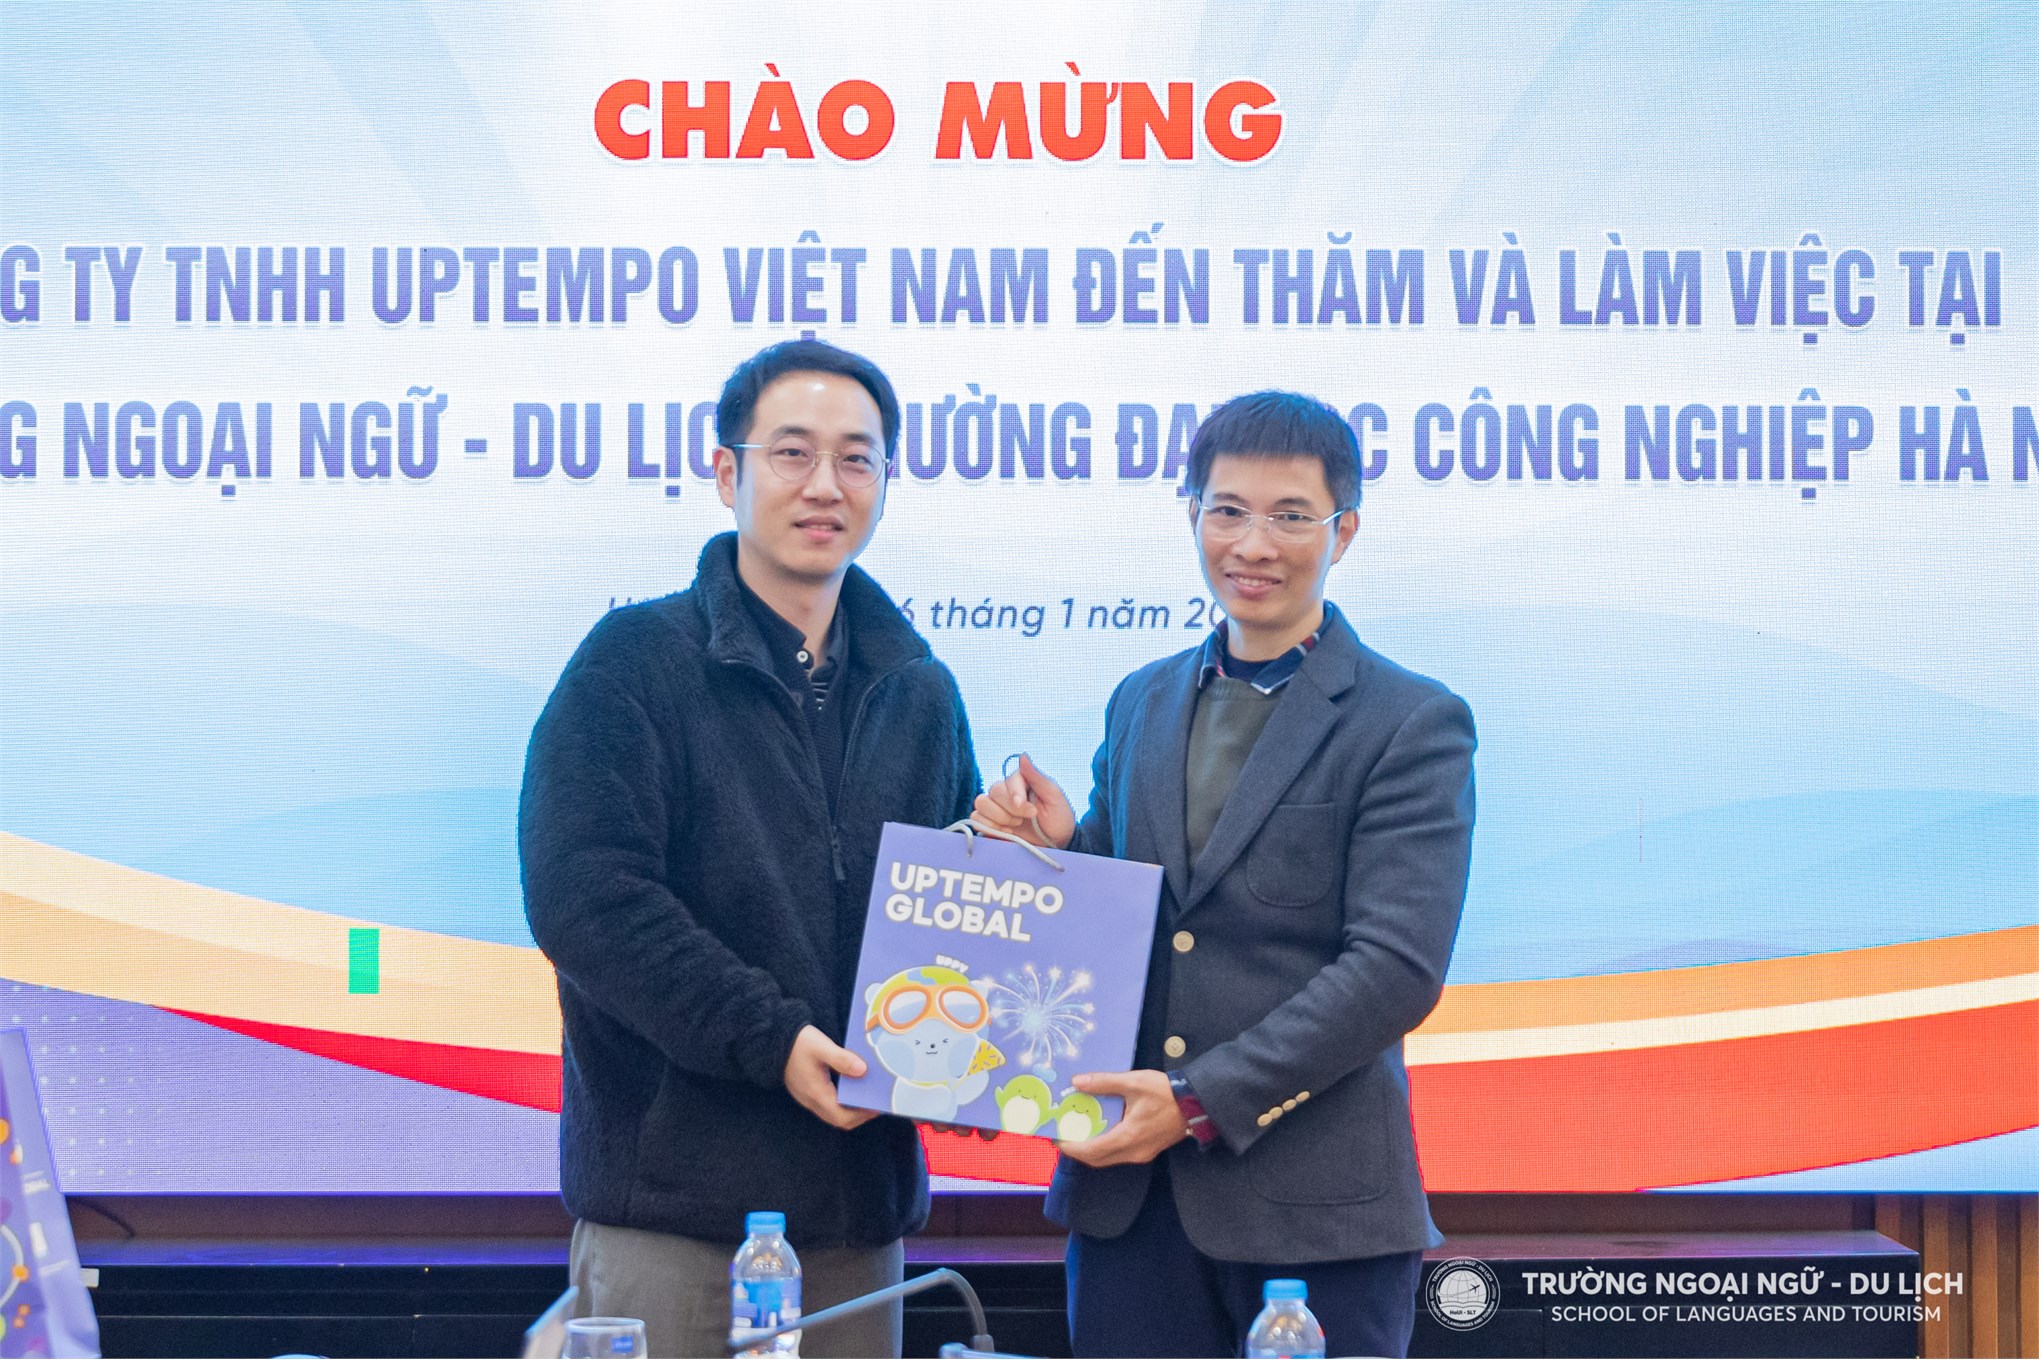 Trường Ngoại ngữ - Du lịch, Trường Đại học Công nghiệp Hà Nội đã tổ chức đón tiếp đoàn công tác Công ty TNHH UPTEMPO Việt Nam